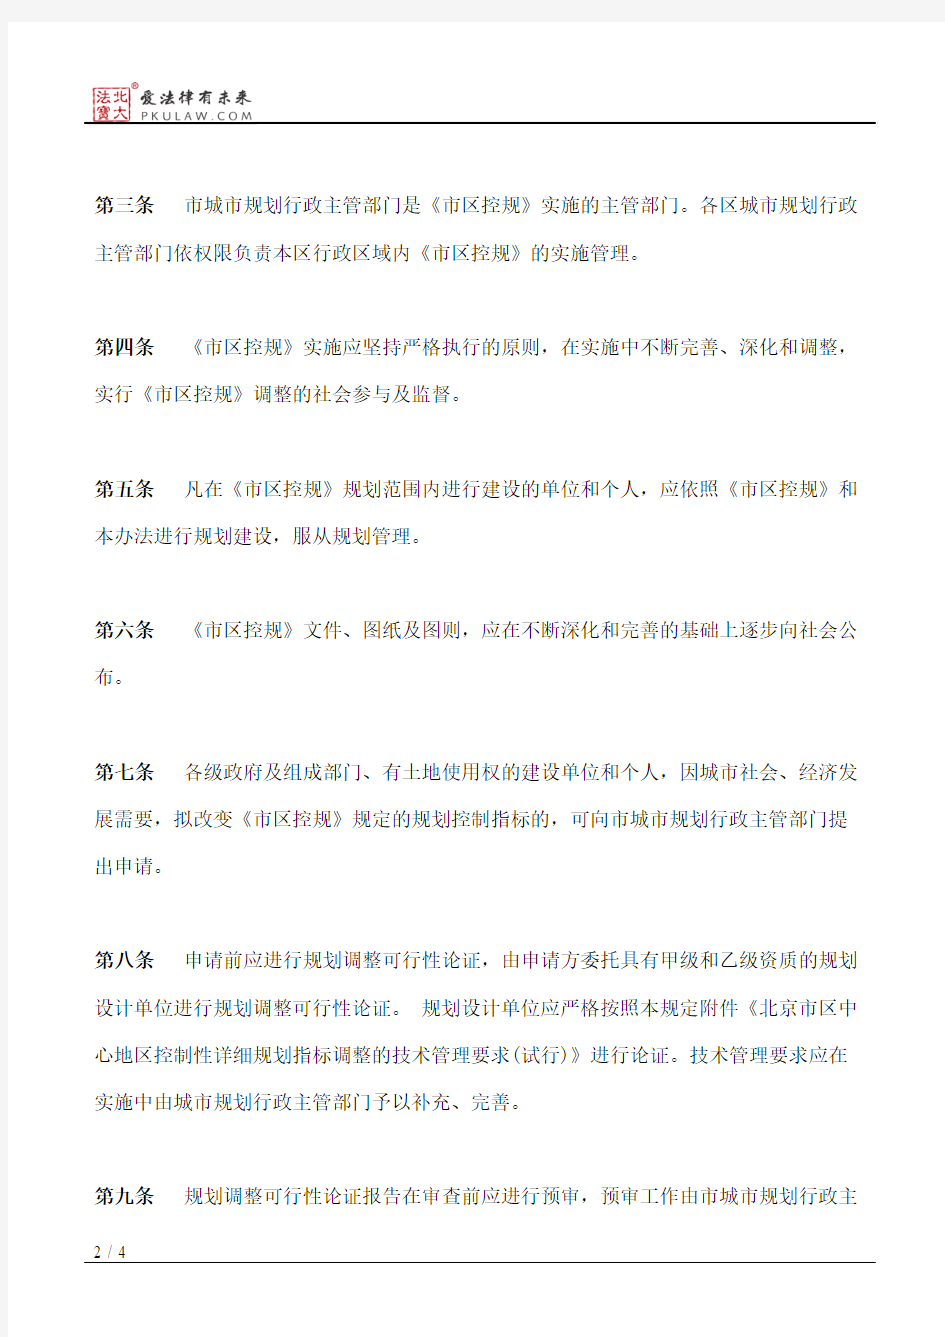 北京市区中心区控制性详细规划实施管理办法(试行)